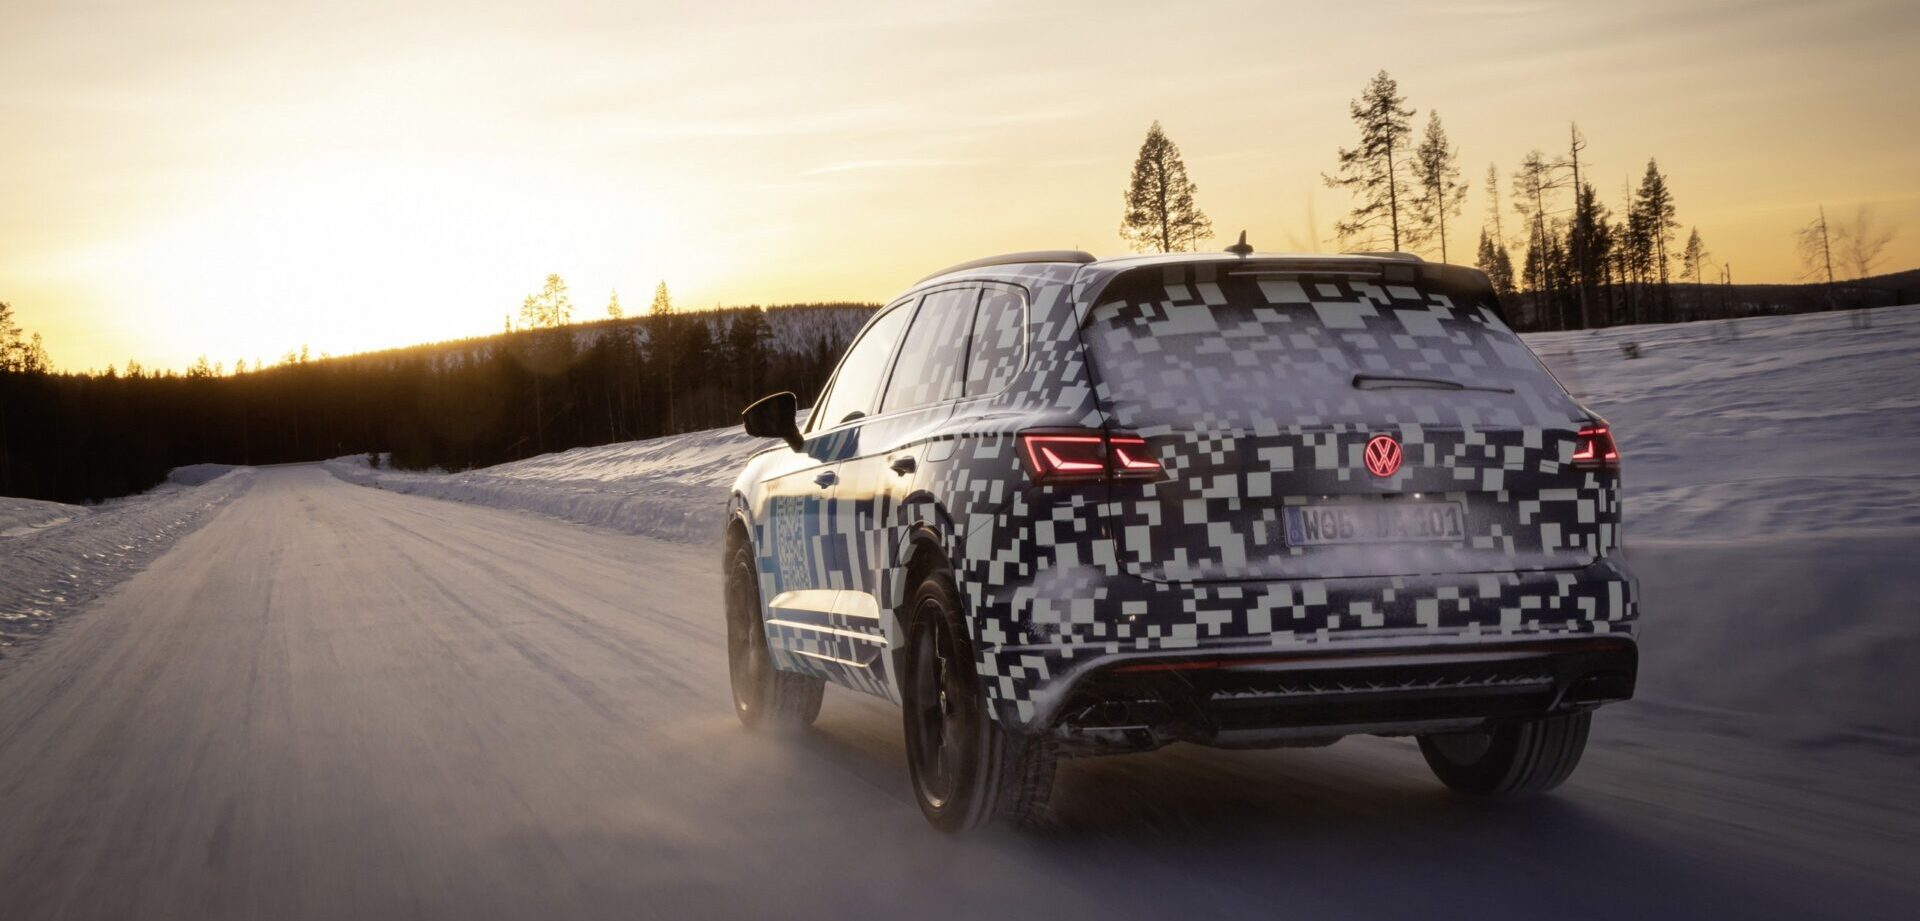 VW Touareg 2024 года имеет задний логотип с подсветкой и 38 400 микросветодиодов в новых матричных фарах